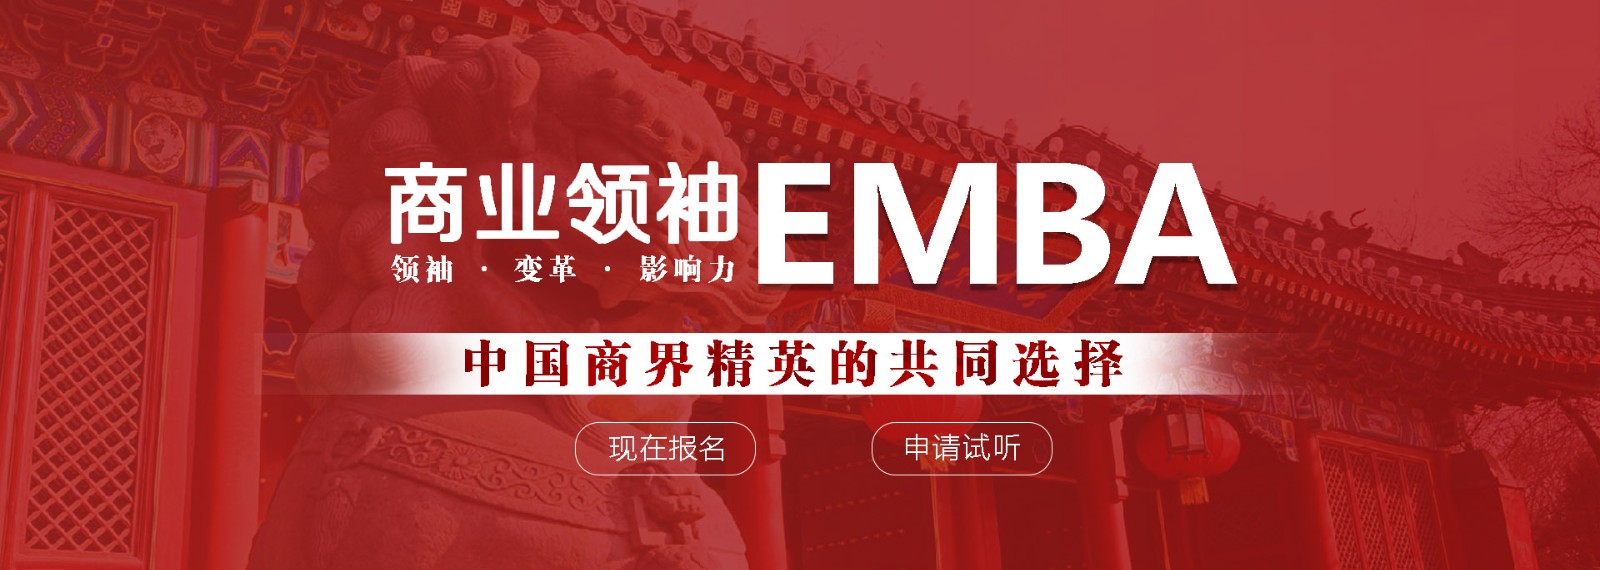 商业领袖EMBA,中国商业精英的共同选择